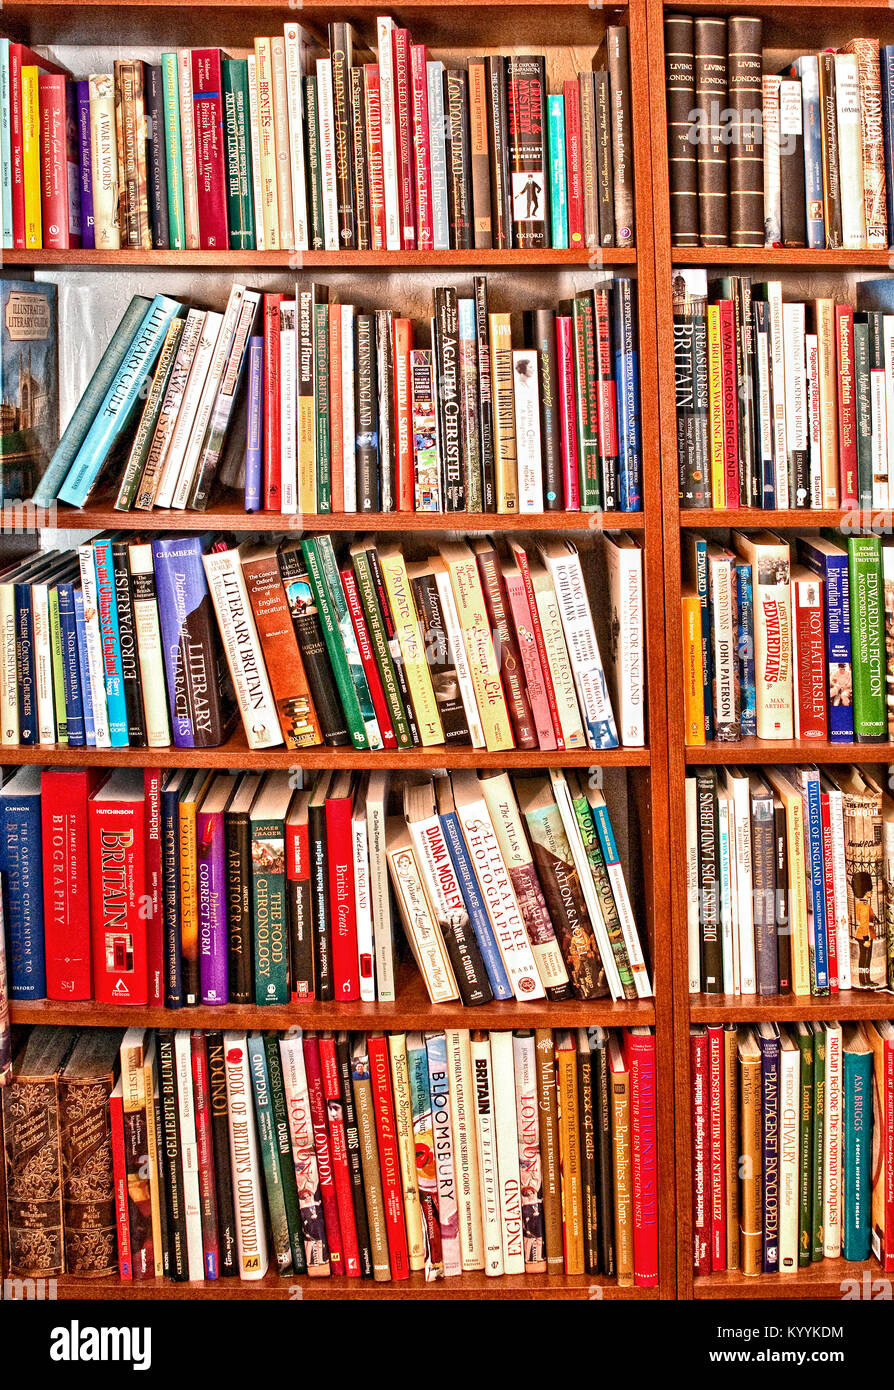 Books in a row on shelves; Bücher aufgereiht in einem Regal Stock Photo